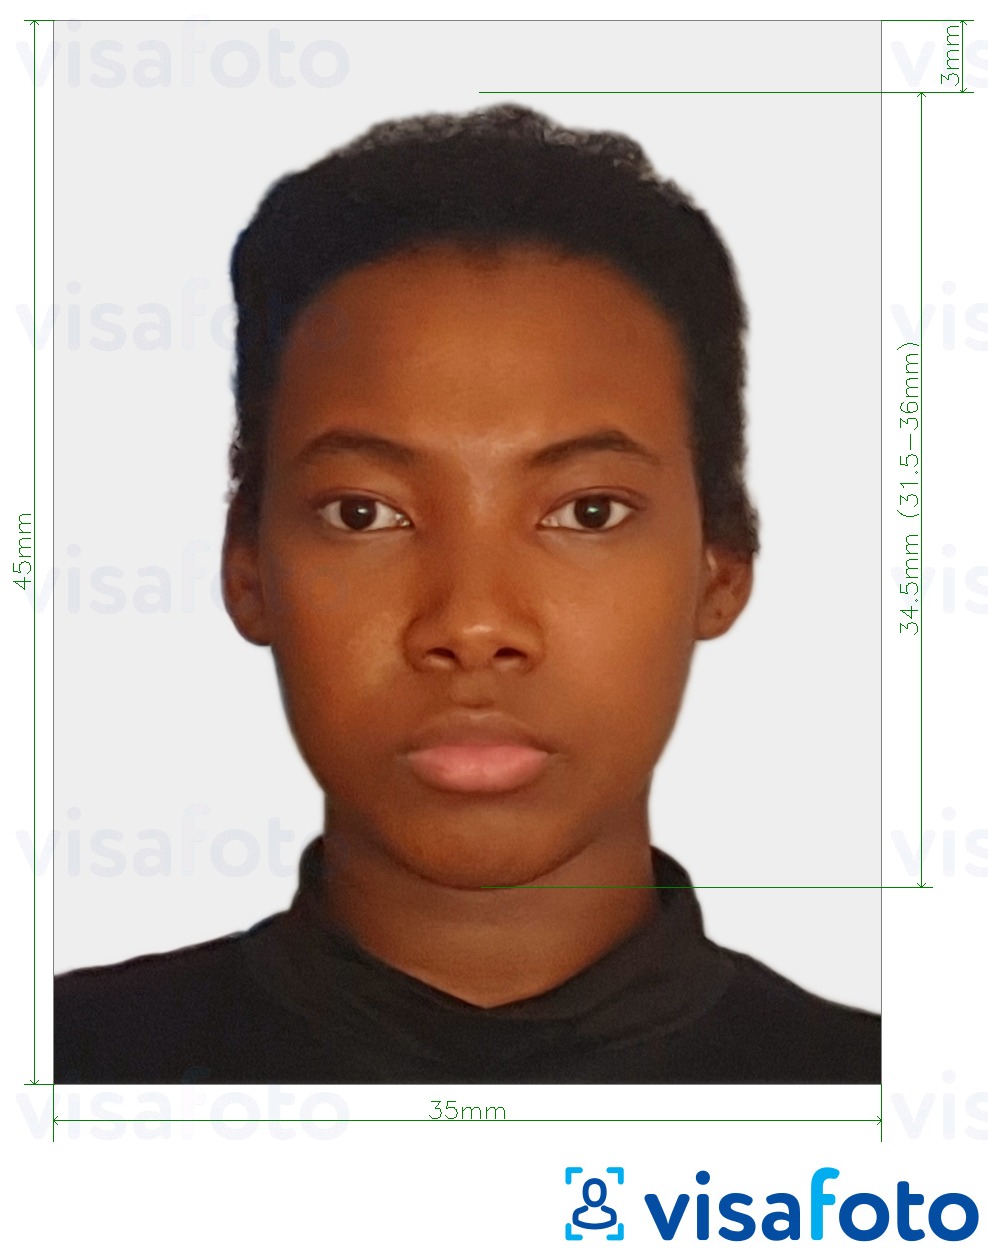 Contoh dari foto untuk Visa Afrika Selatan 35x45 mm (3,5x4,5 cm) dengan ukuran spesifikasi yang tepat